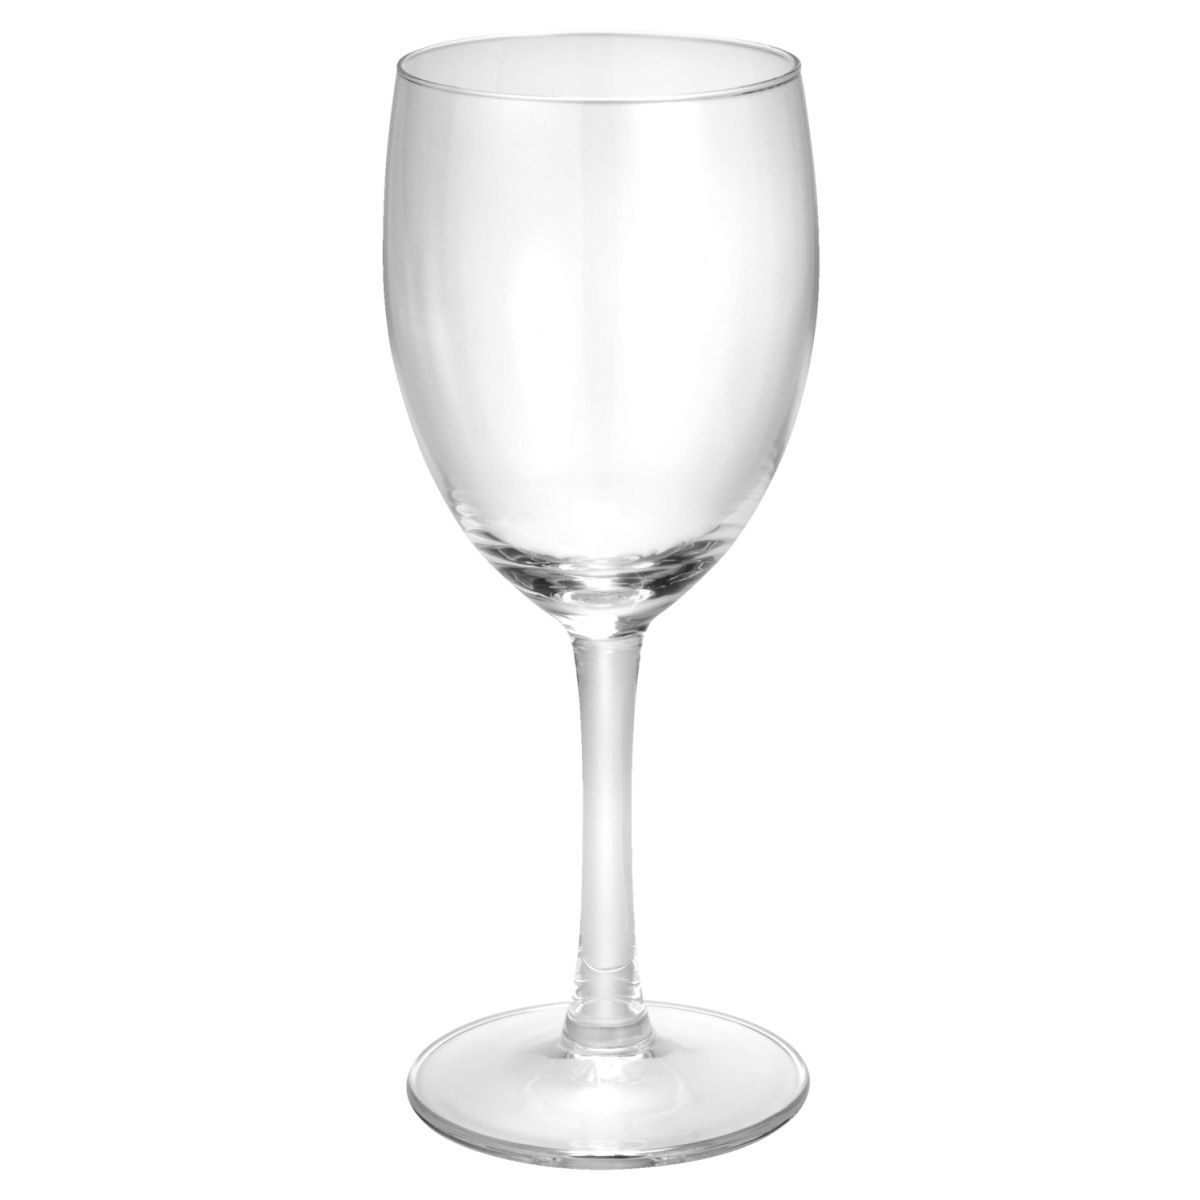 Royal leerdam Witte wijnglas Claret zonder vulstreepje; 190ml, 6.1x16.3 cm (ØxH); transparant; 12 stuk / verpakking